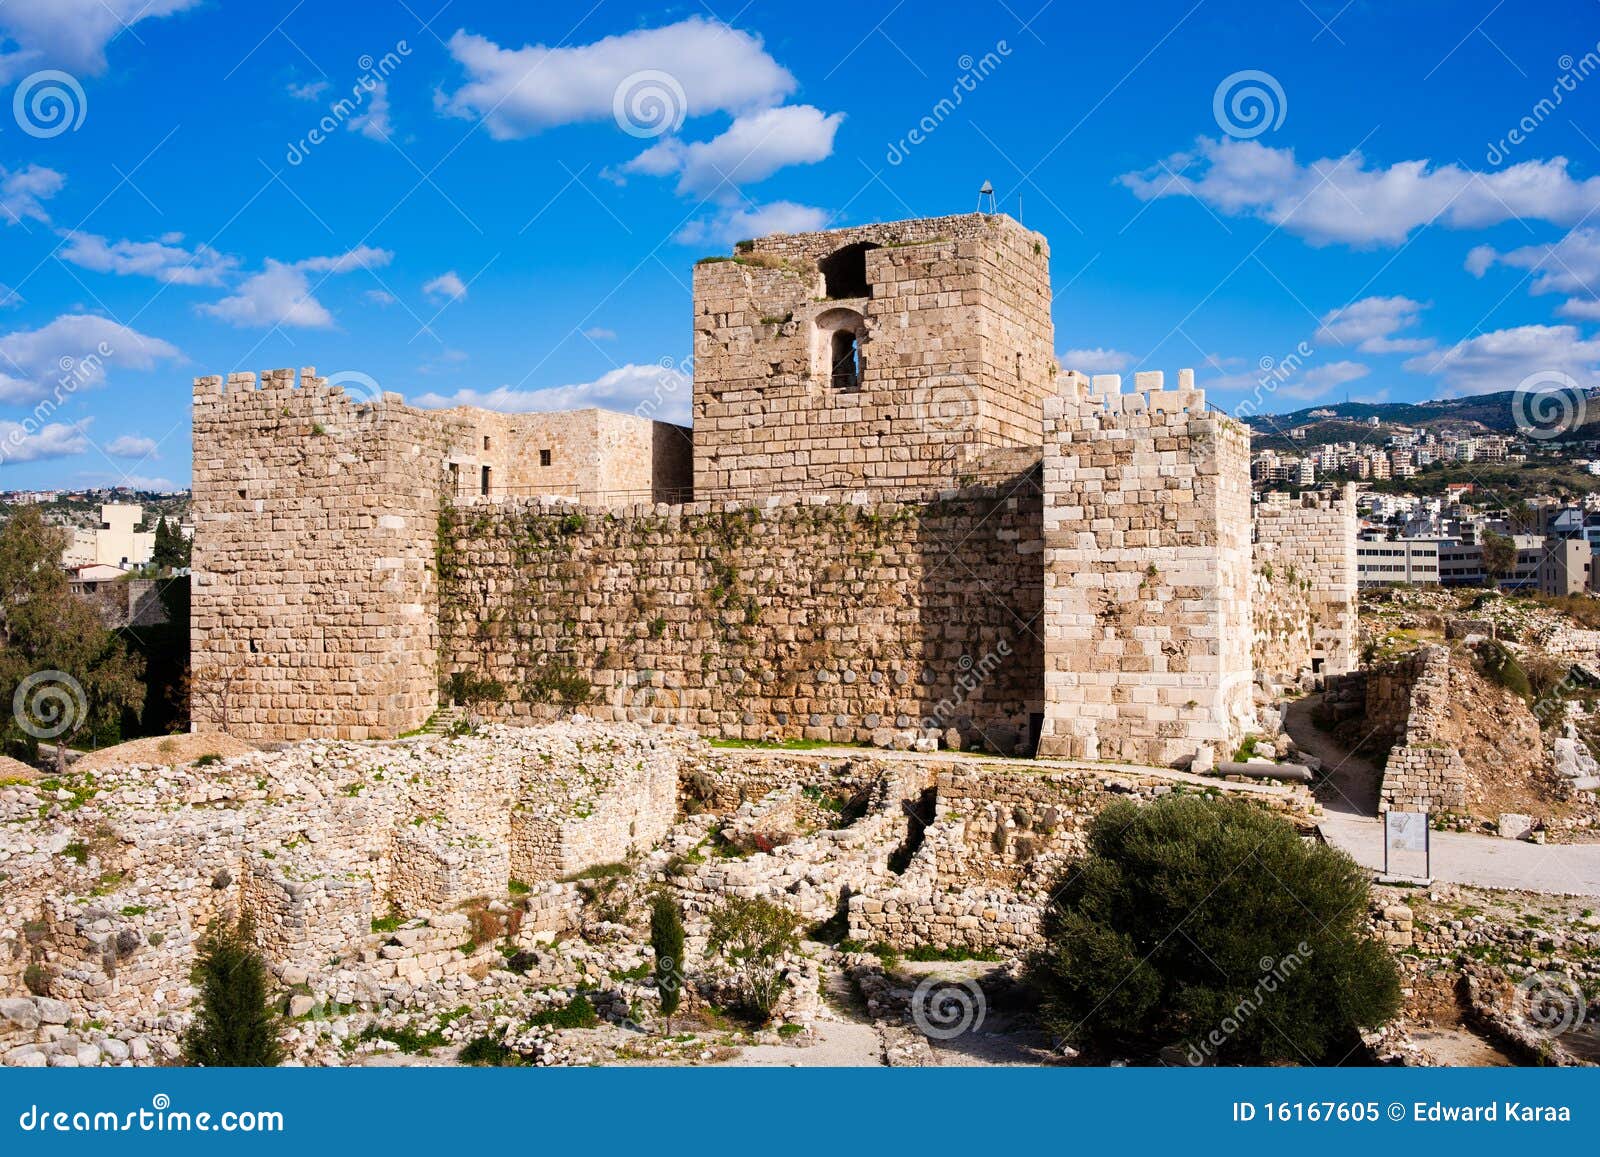 byblos crusader citadel